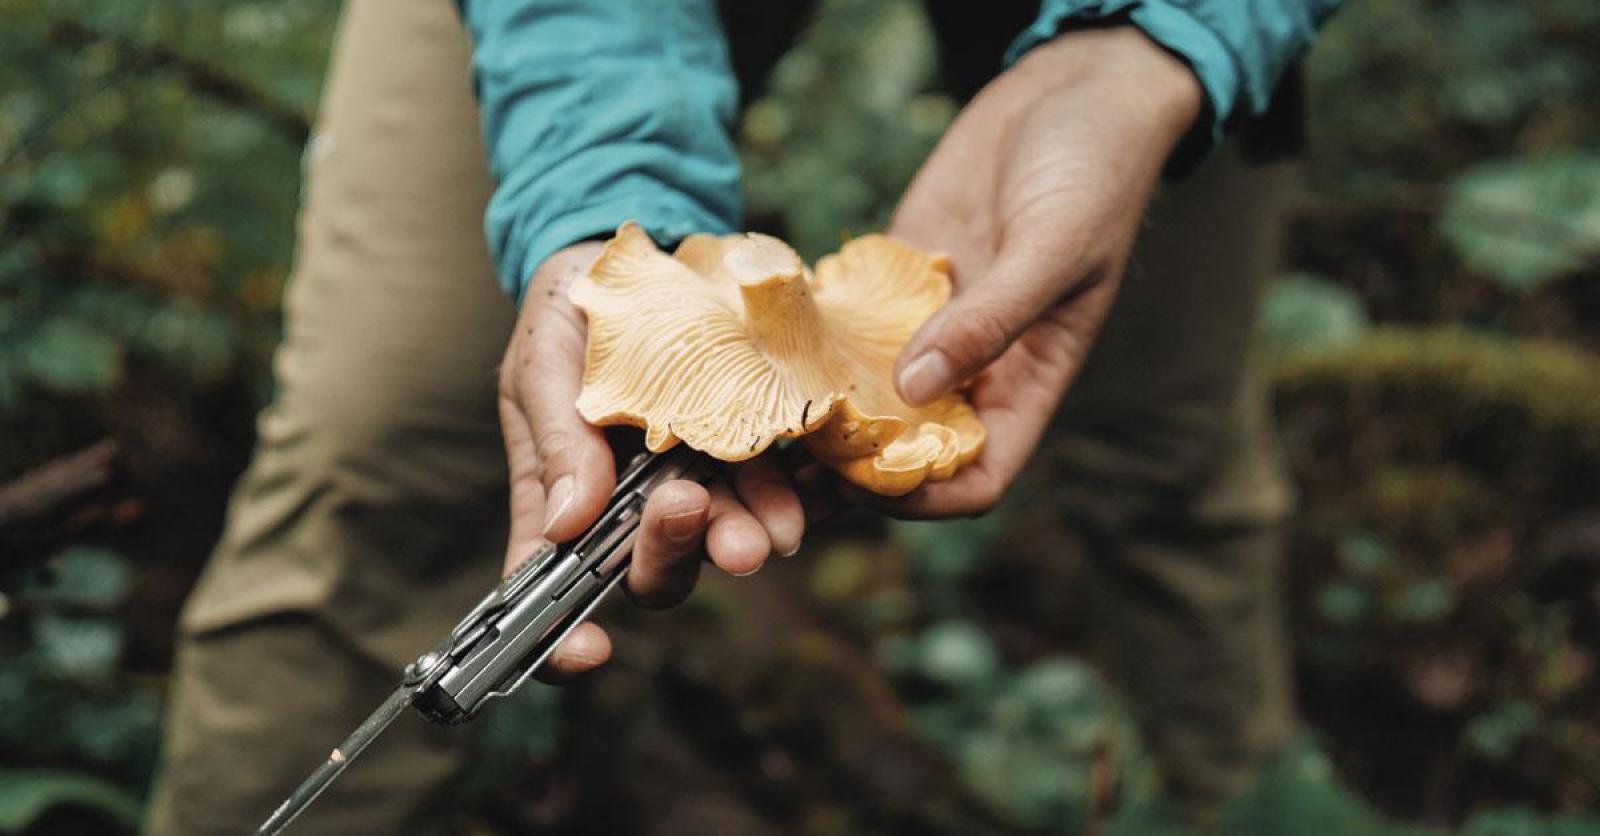 Comment faire pousser des champignons ? : Femme Actuelle Le MAG